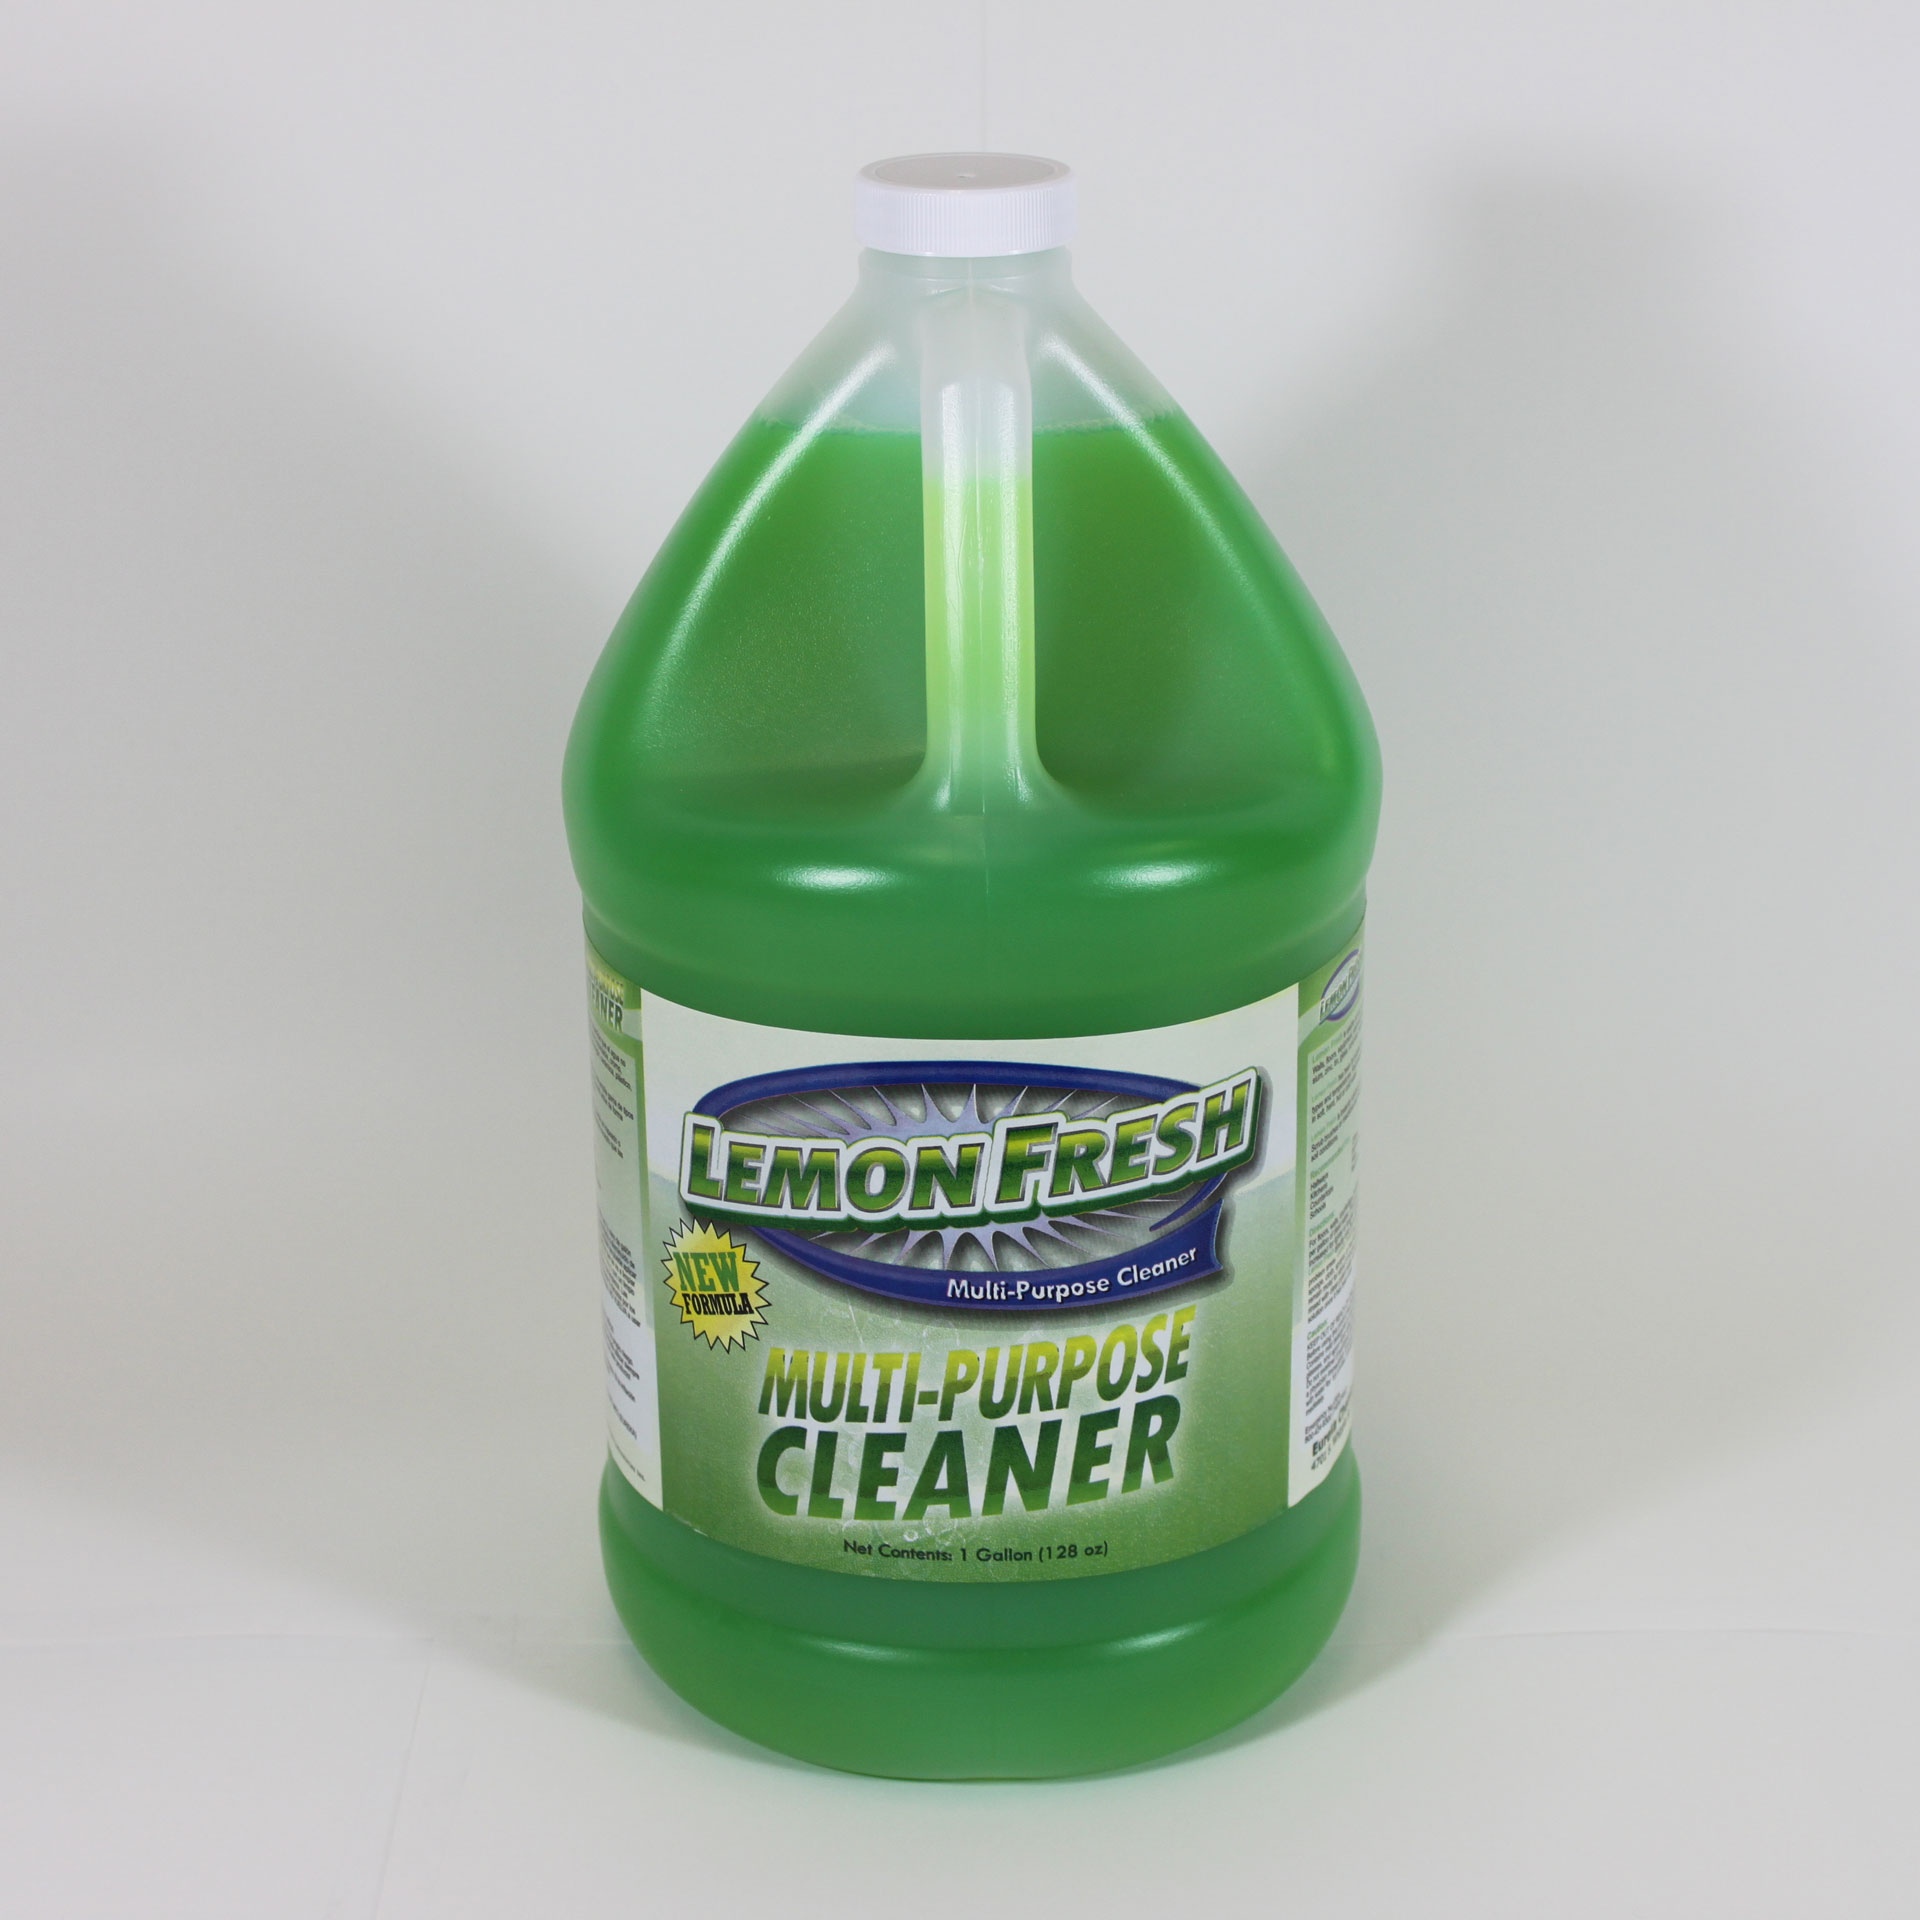 Bottle of Lemon Fresh multi-purpose cleaner